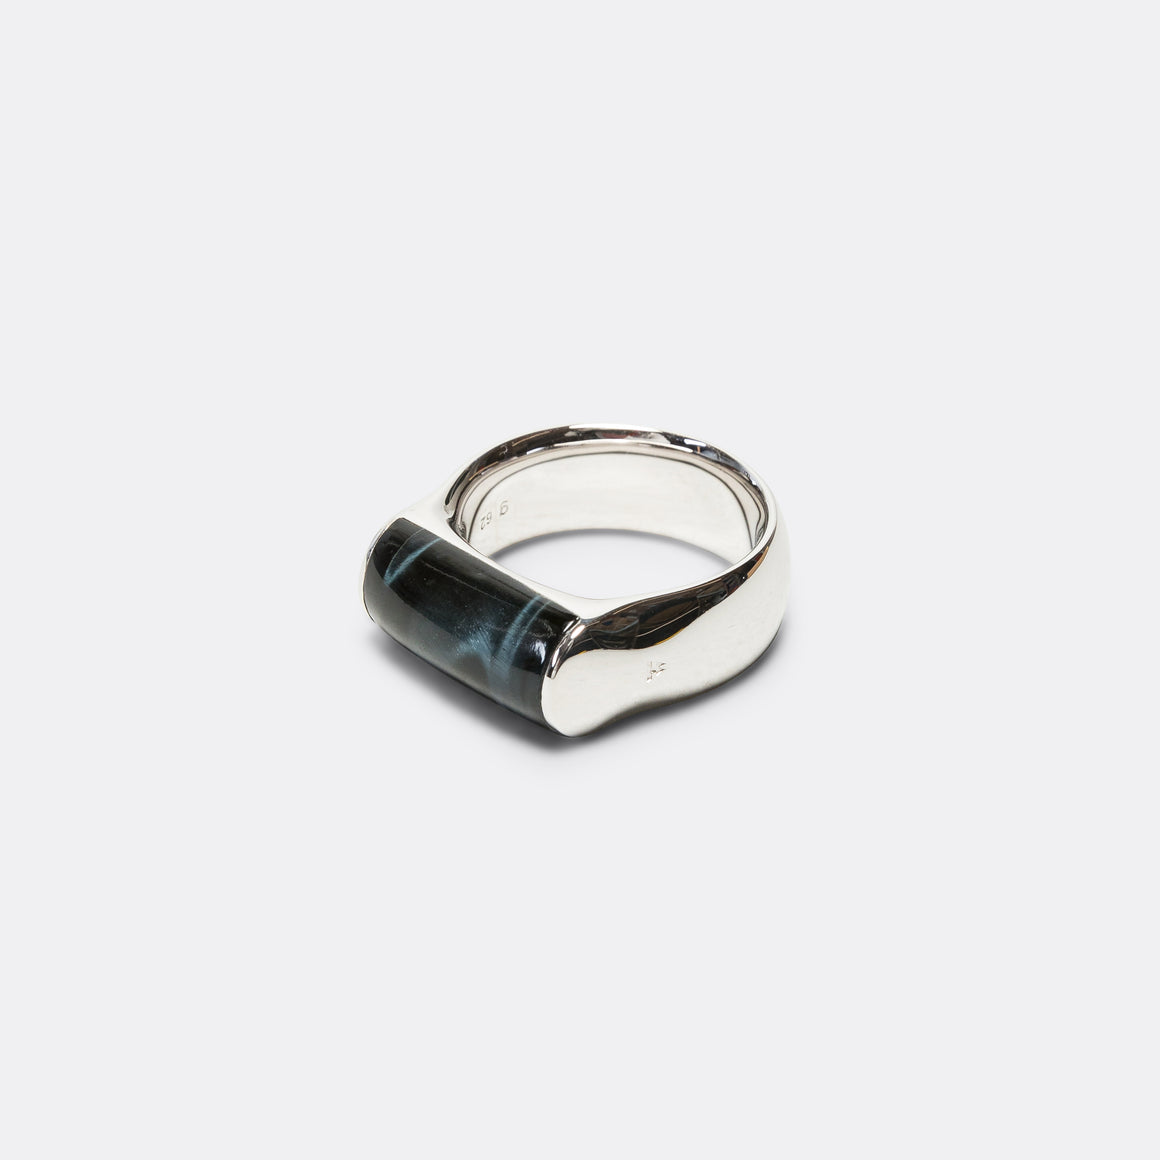 Crest Ring Blue Hawk Eye - 925 Silver